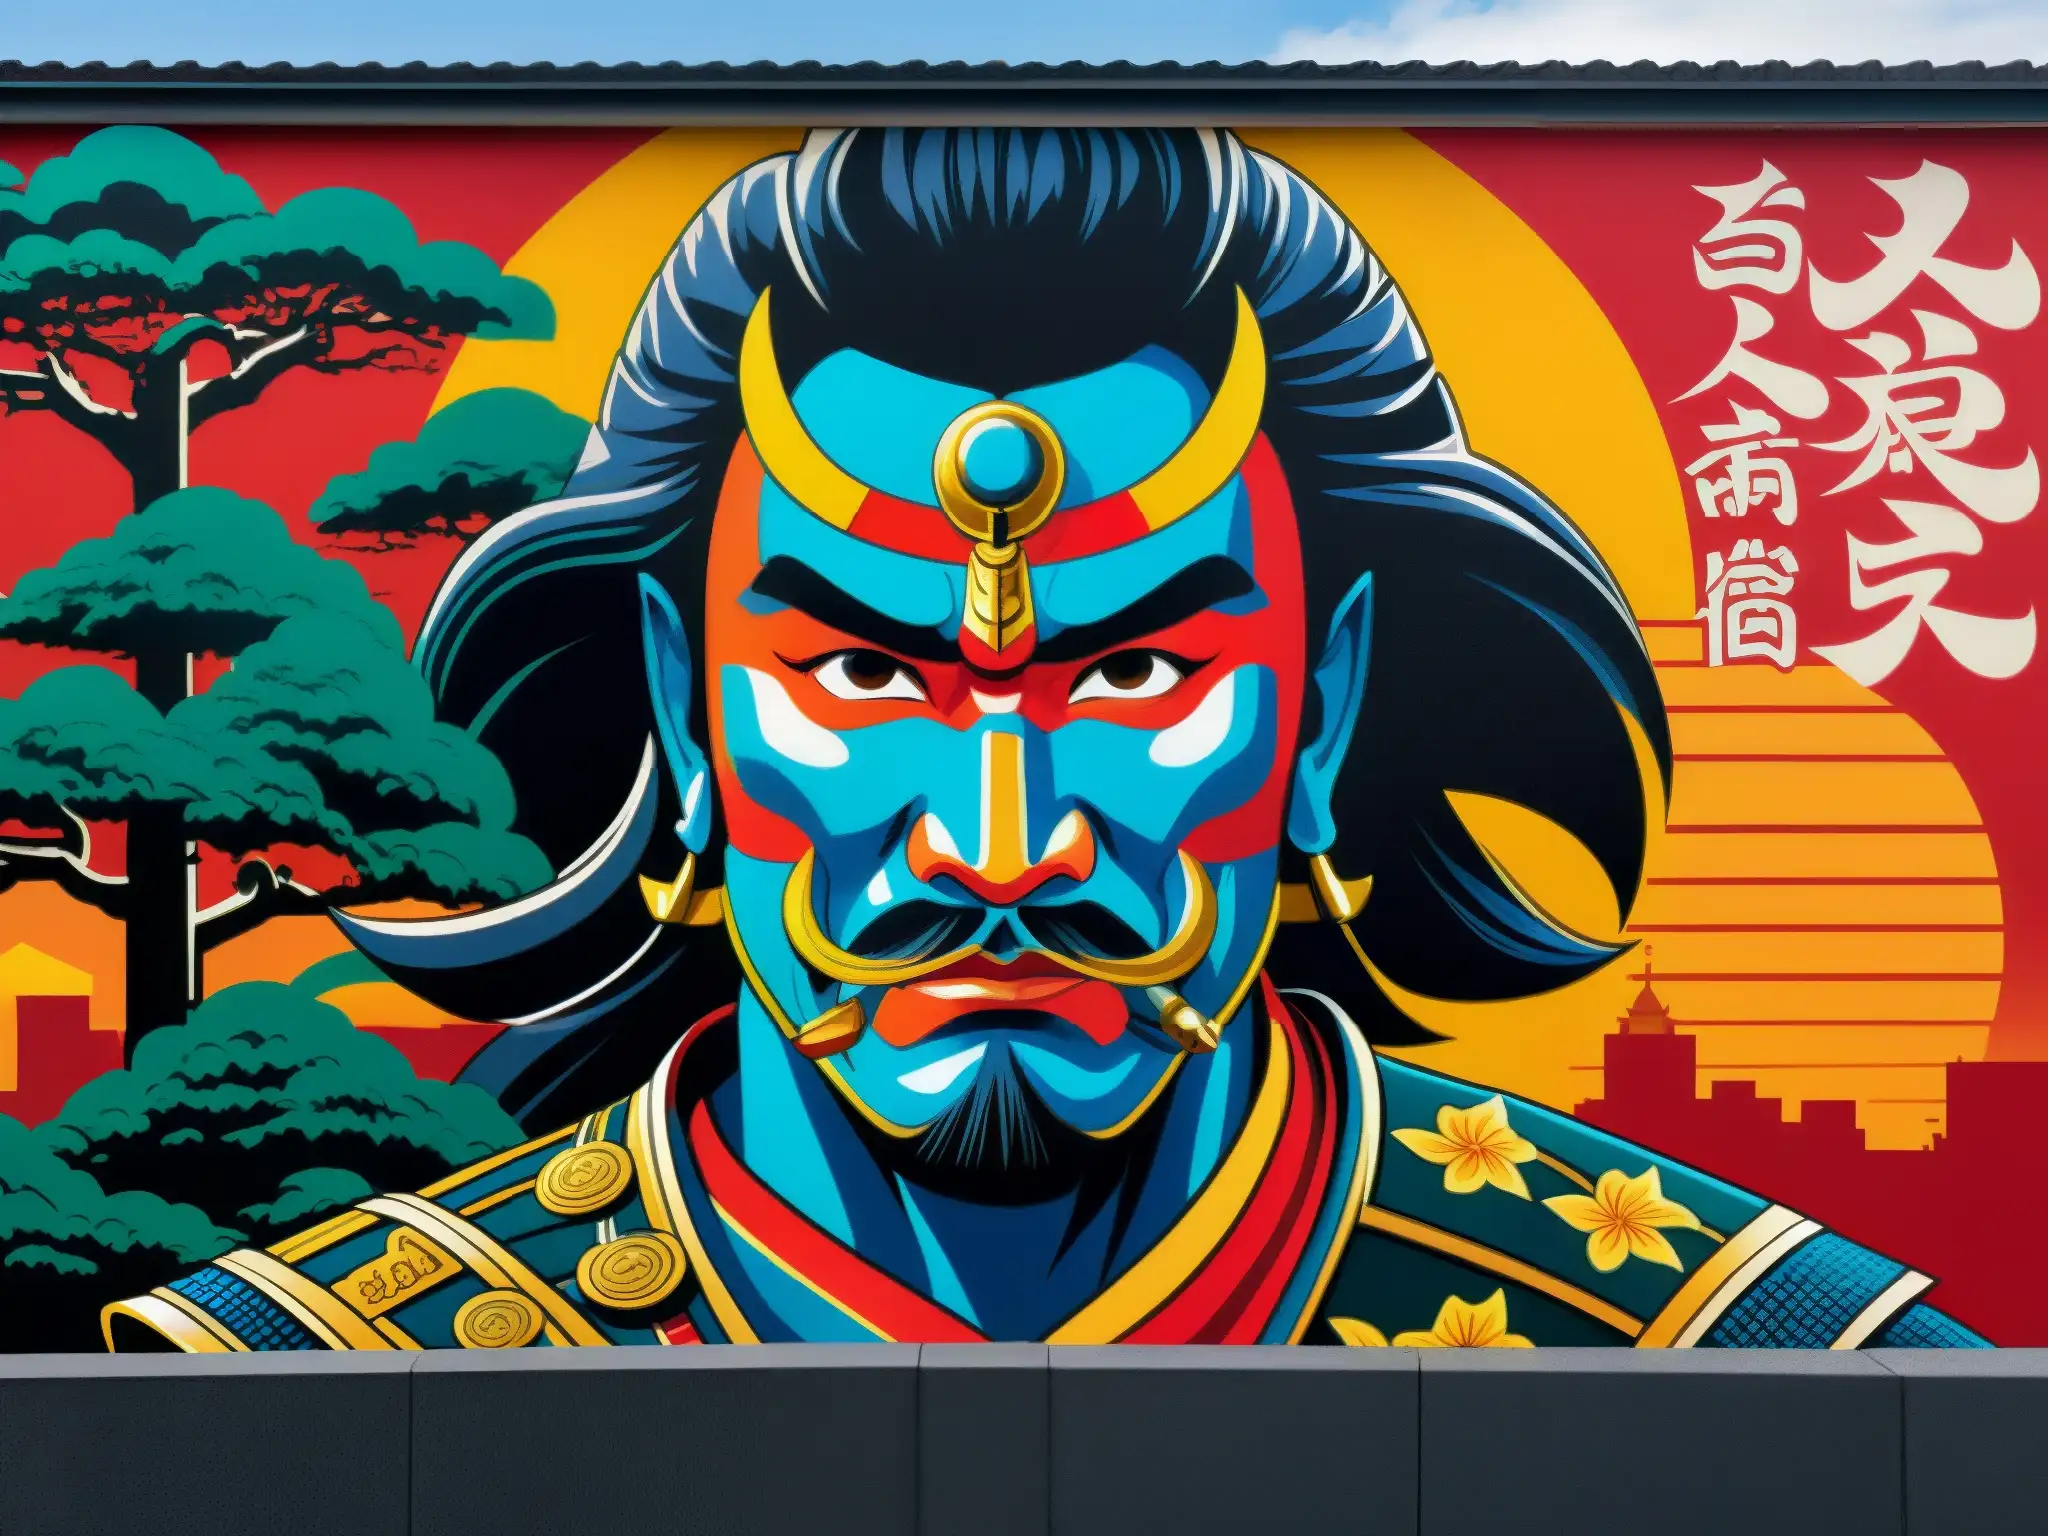 Un vibrante mural en Tokyo del rebelde samurái Taira Masakado, fusionando historia y modernidad en colores intensos y detallados